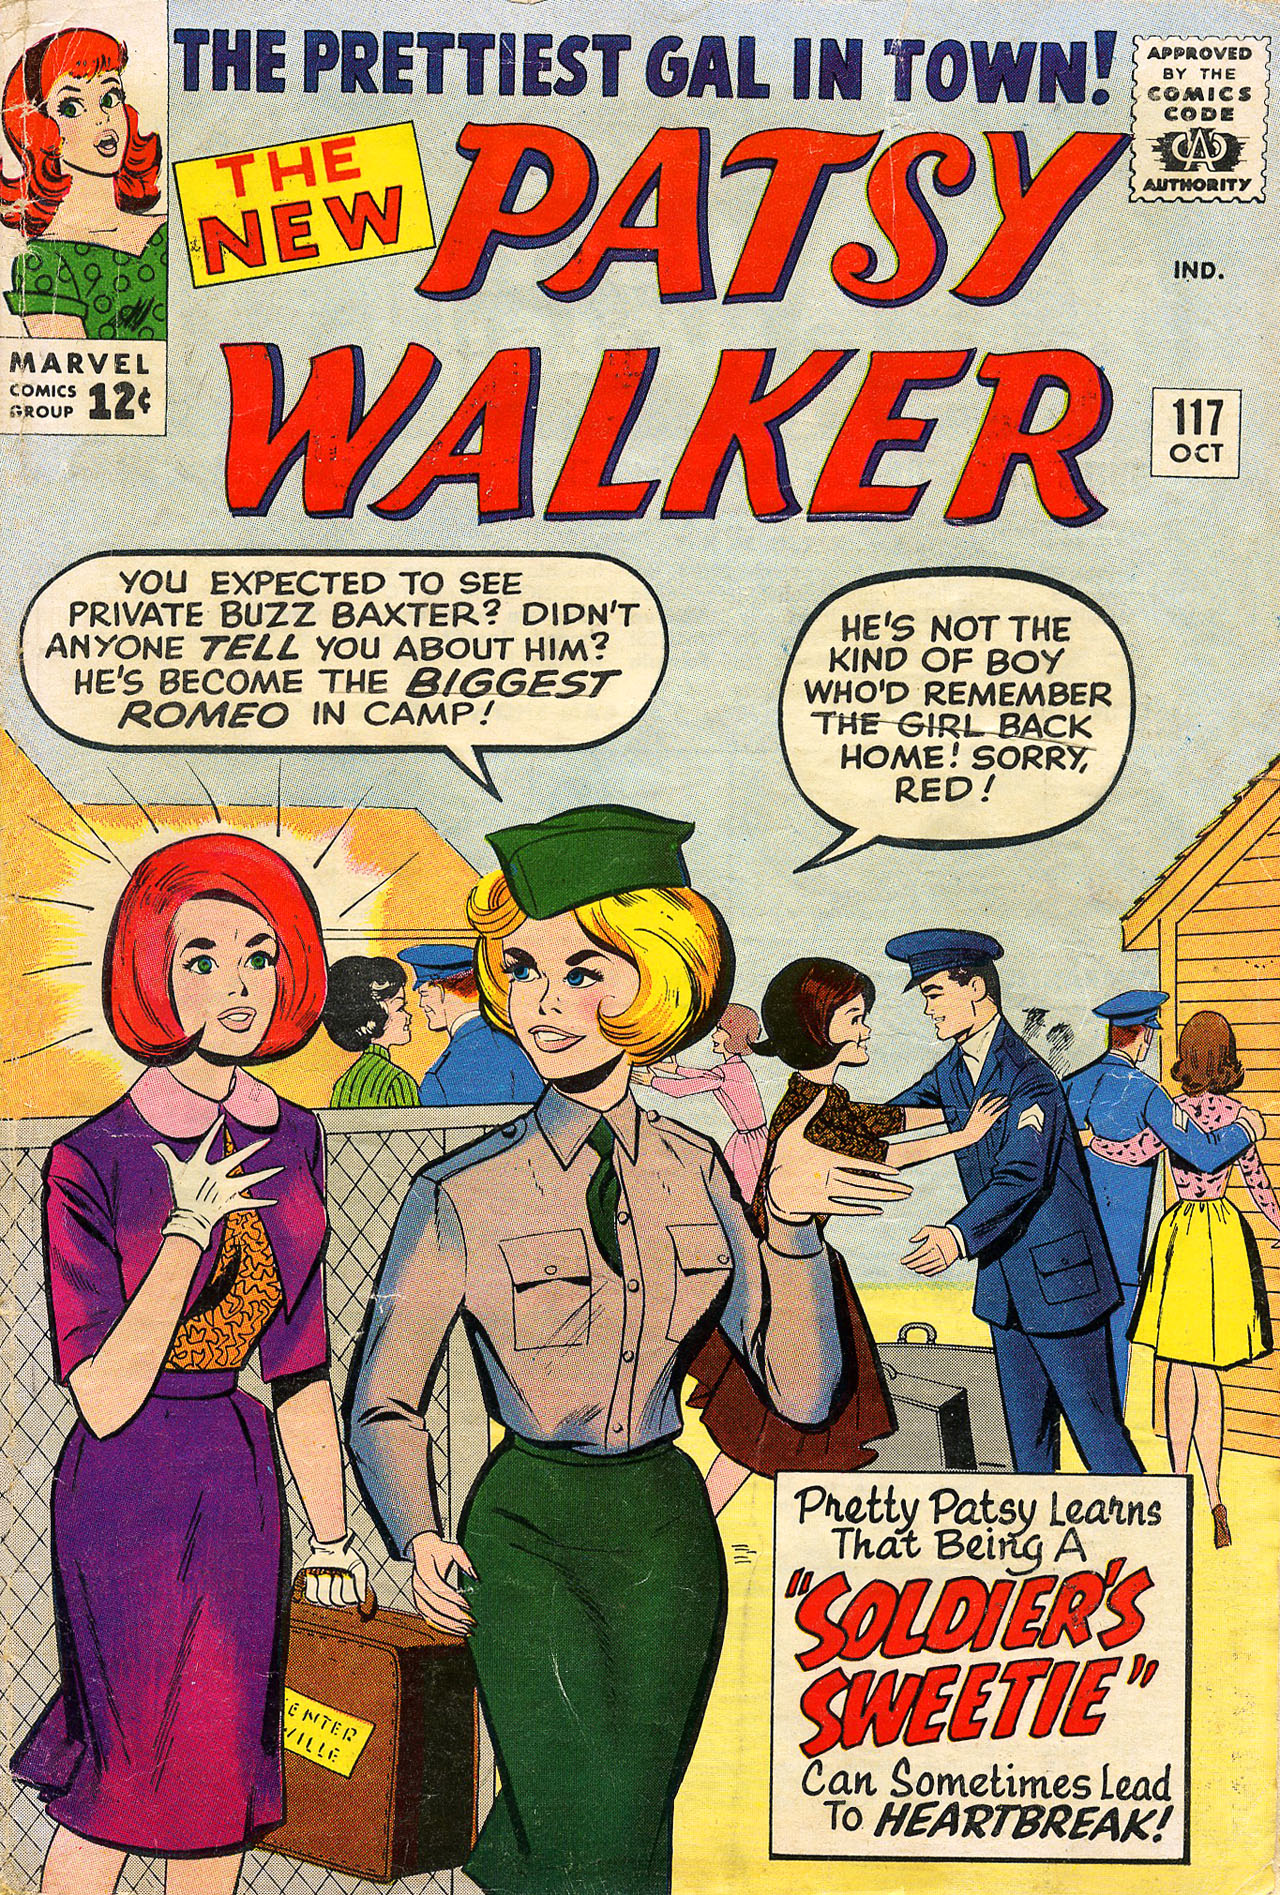 Read online Patsy Walker comic -  Issue #117 - 1